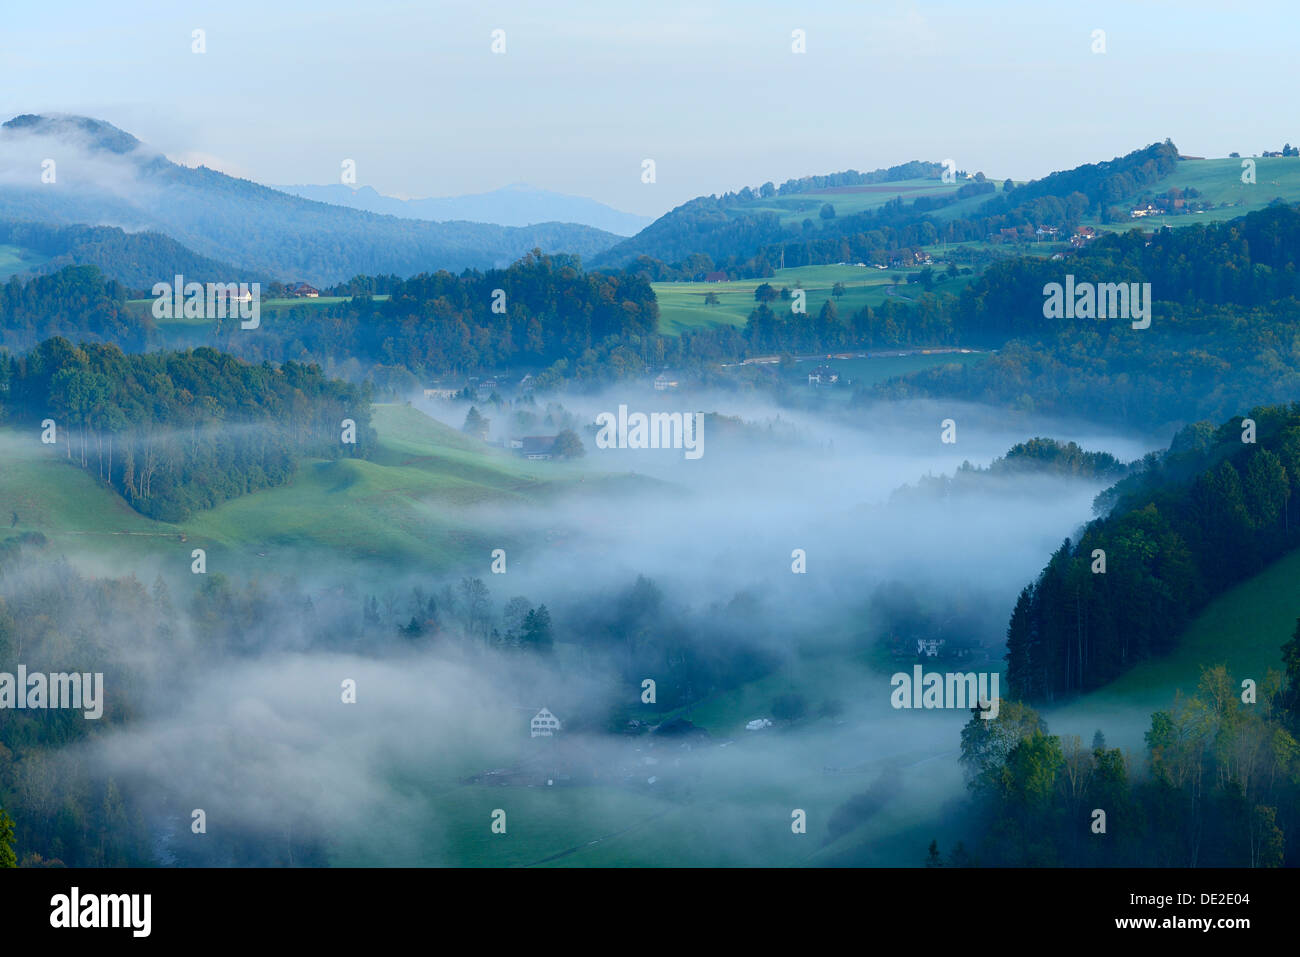 Misty landscape in autumn, Hirzel area, Zurich, Switzerland, Europe Stock Photo